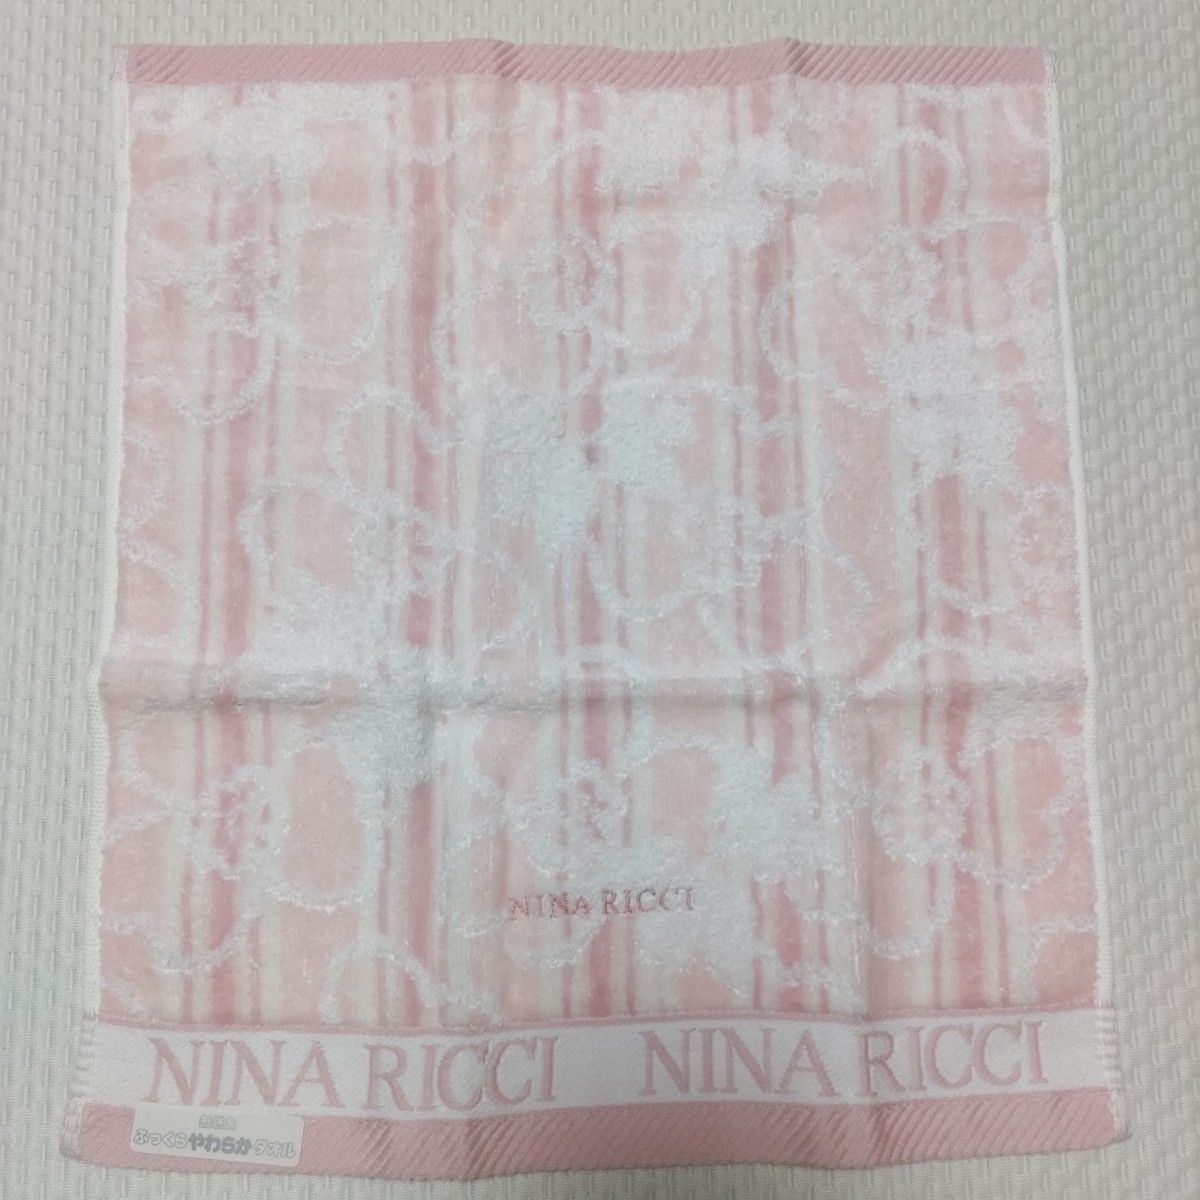 ◆【新品未使用】NINA RICCI ニナリッチ ふっくら やわらか タオル 2枚セット ピンク イエロー